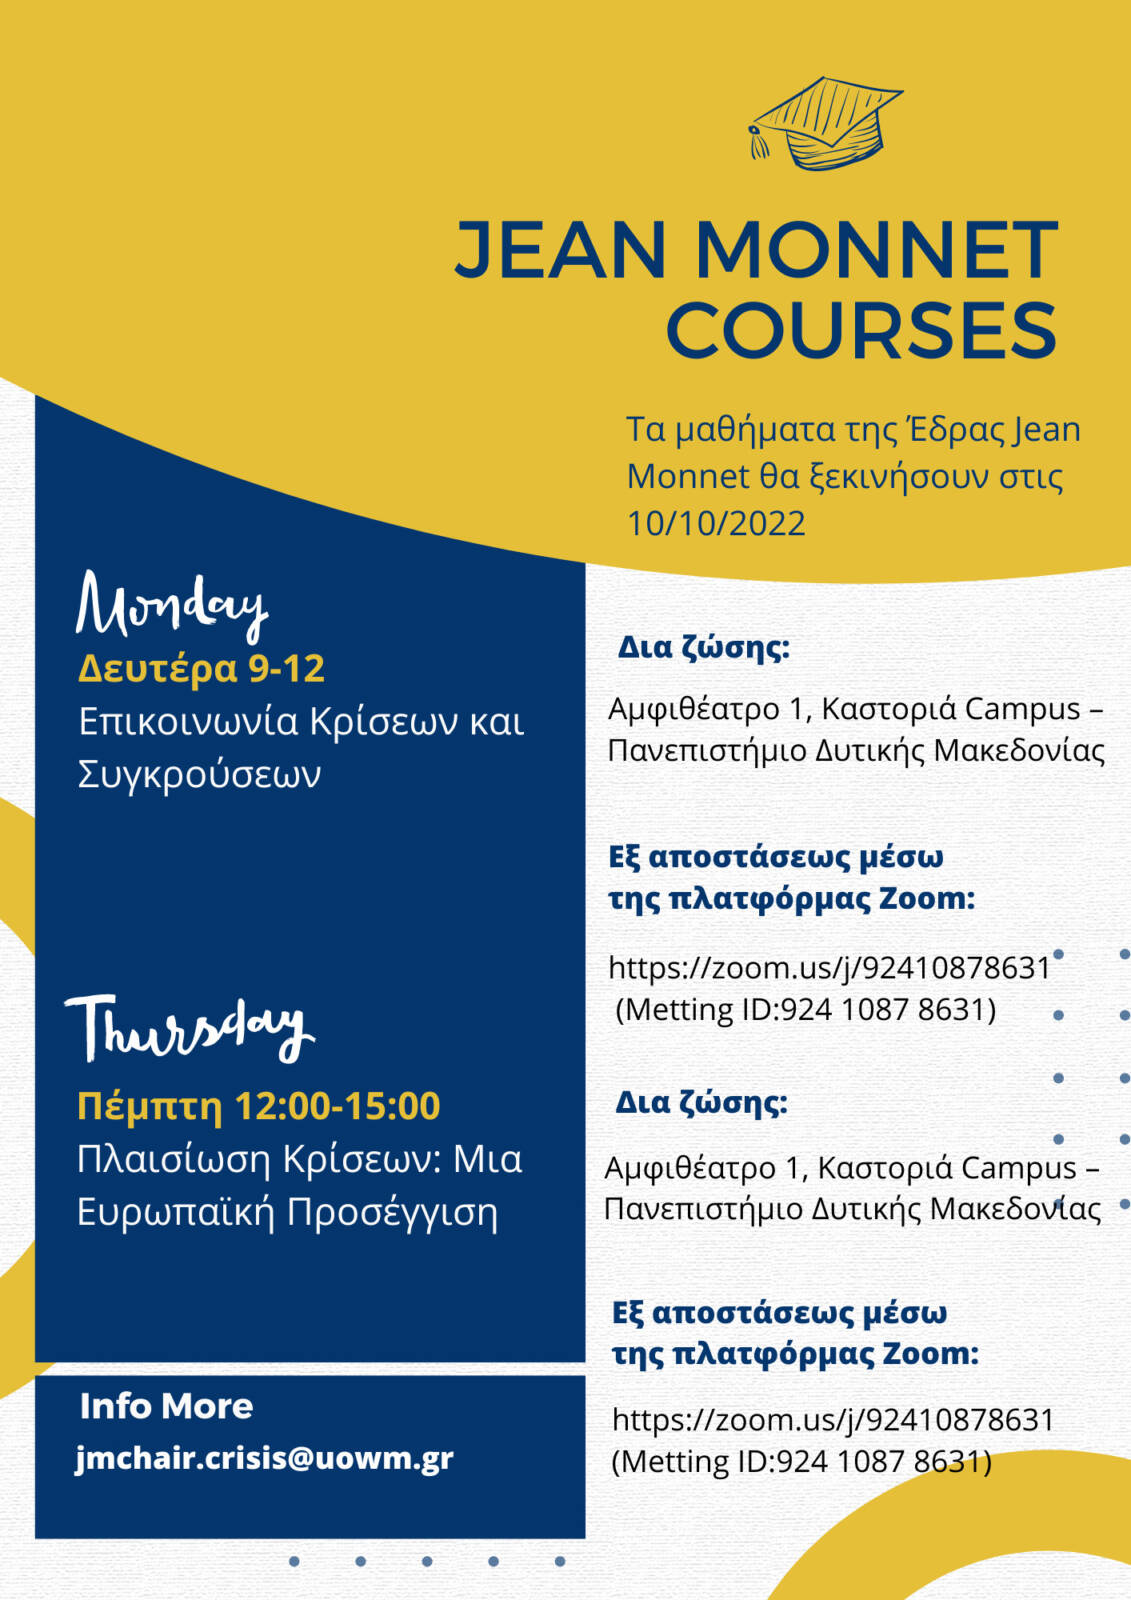 Έδρα Jean Monnet στο Πανεπιστήμιο Δυτικής Μακεδονίας